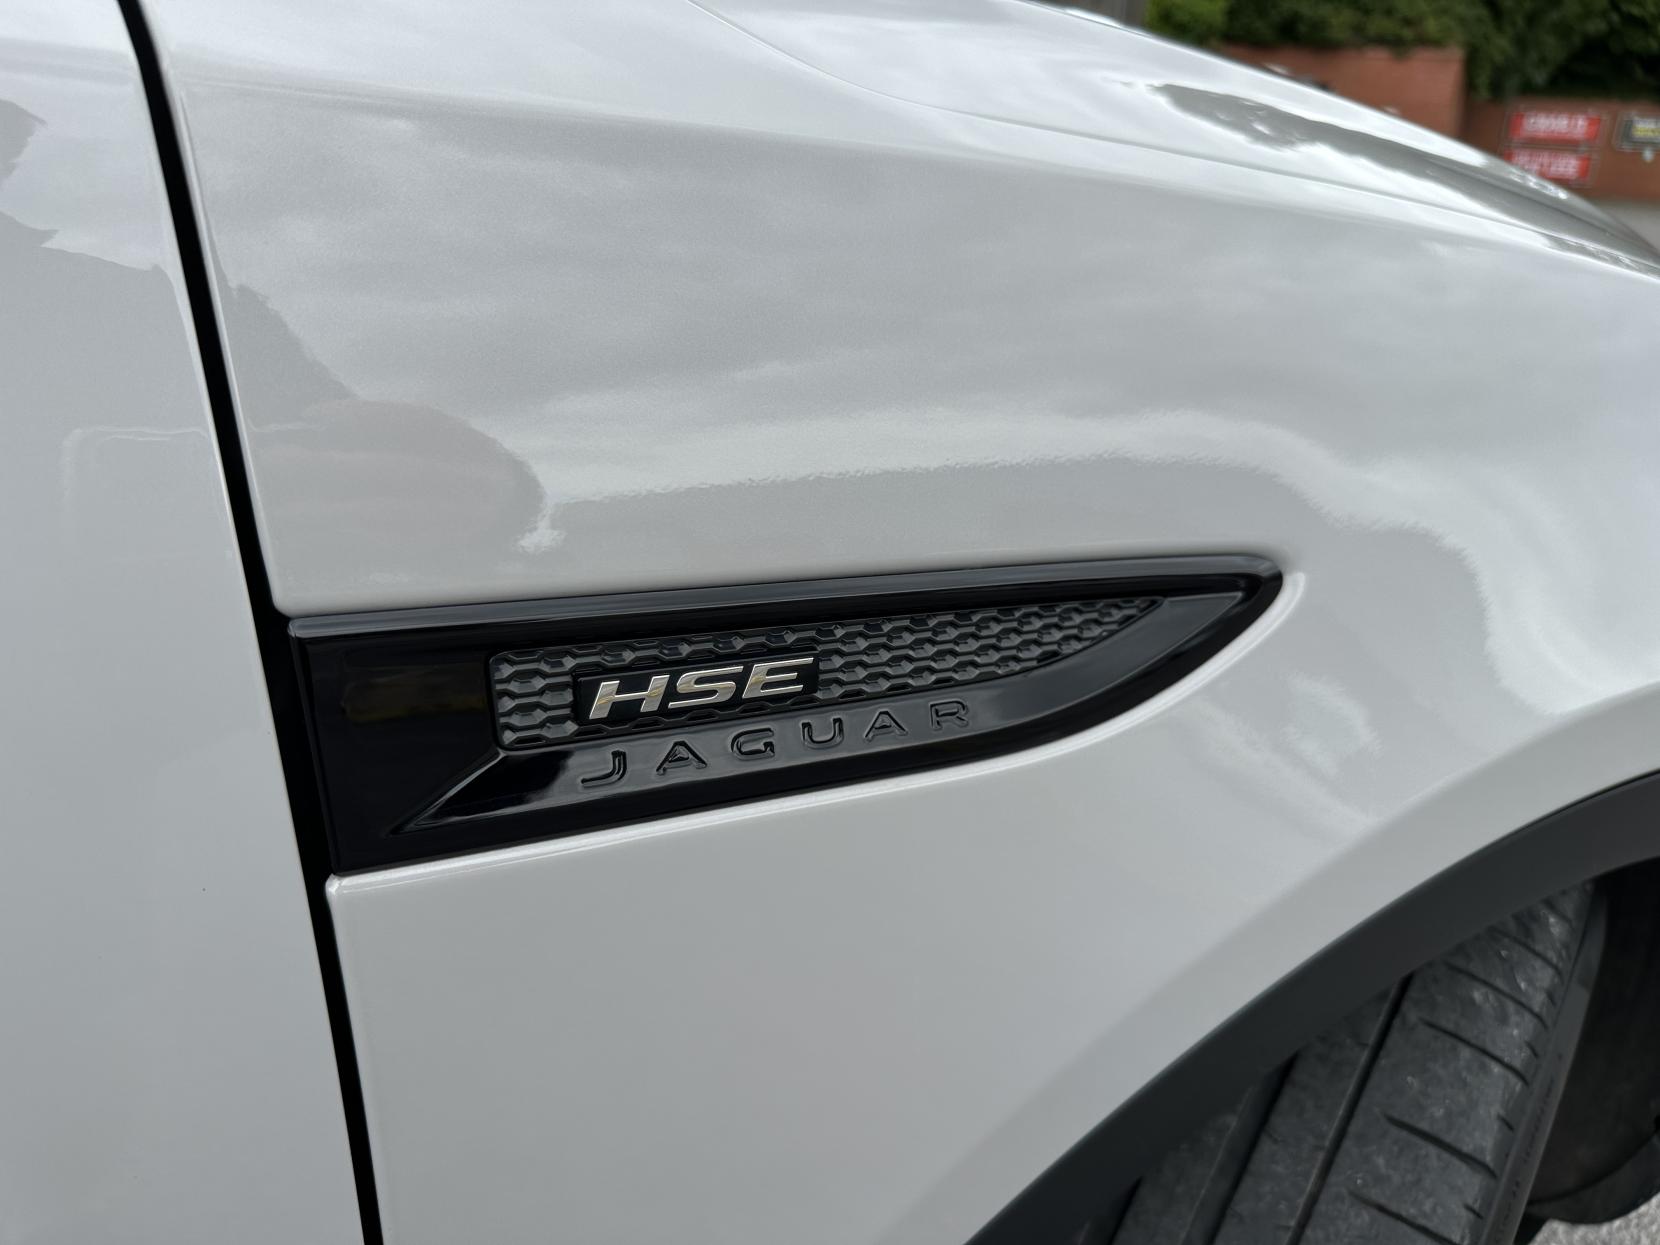 Jaguar E-PACE 2.0 D180 R-Dynamic HSE SUV 5dr Diesel Auto AWD Euro 6 (s/s) (180 ps)